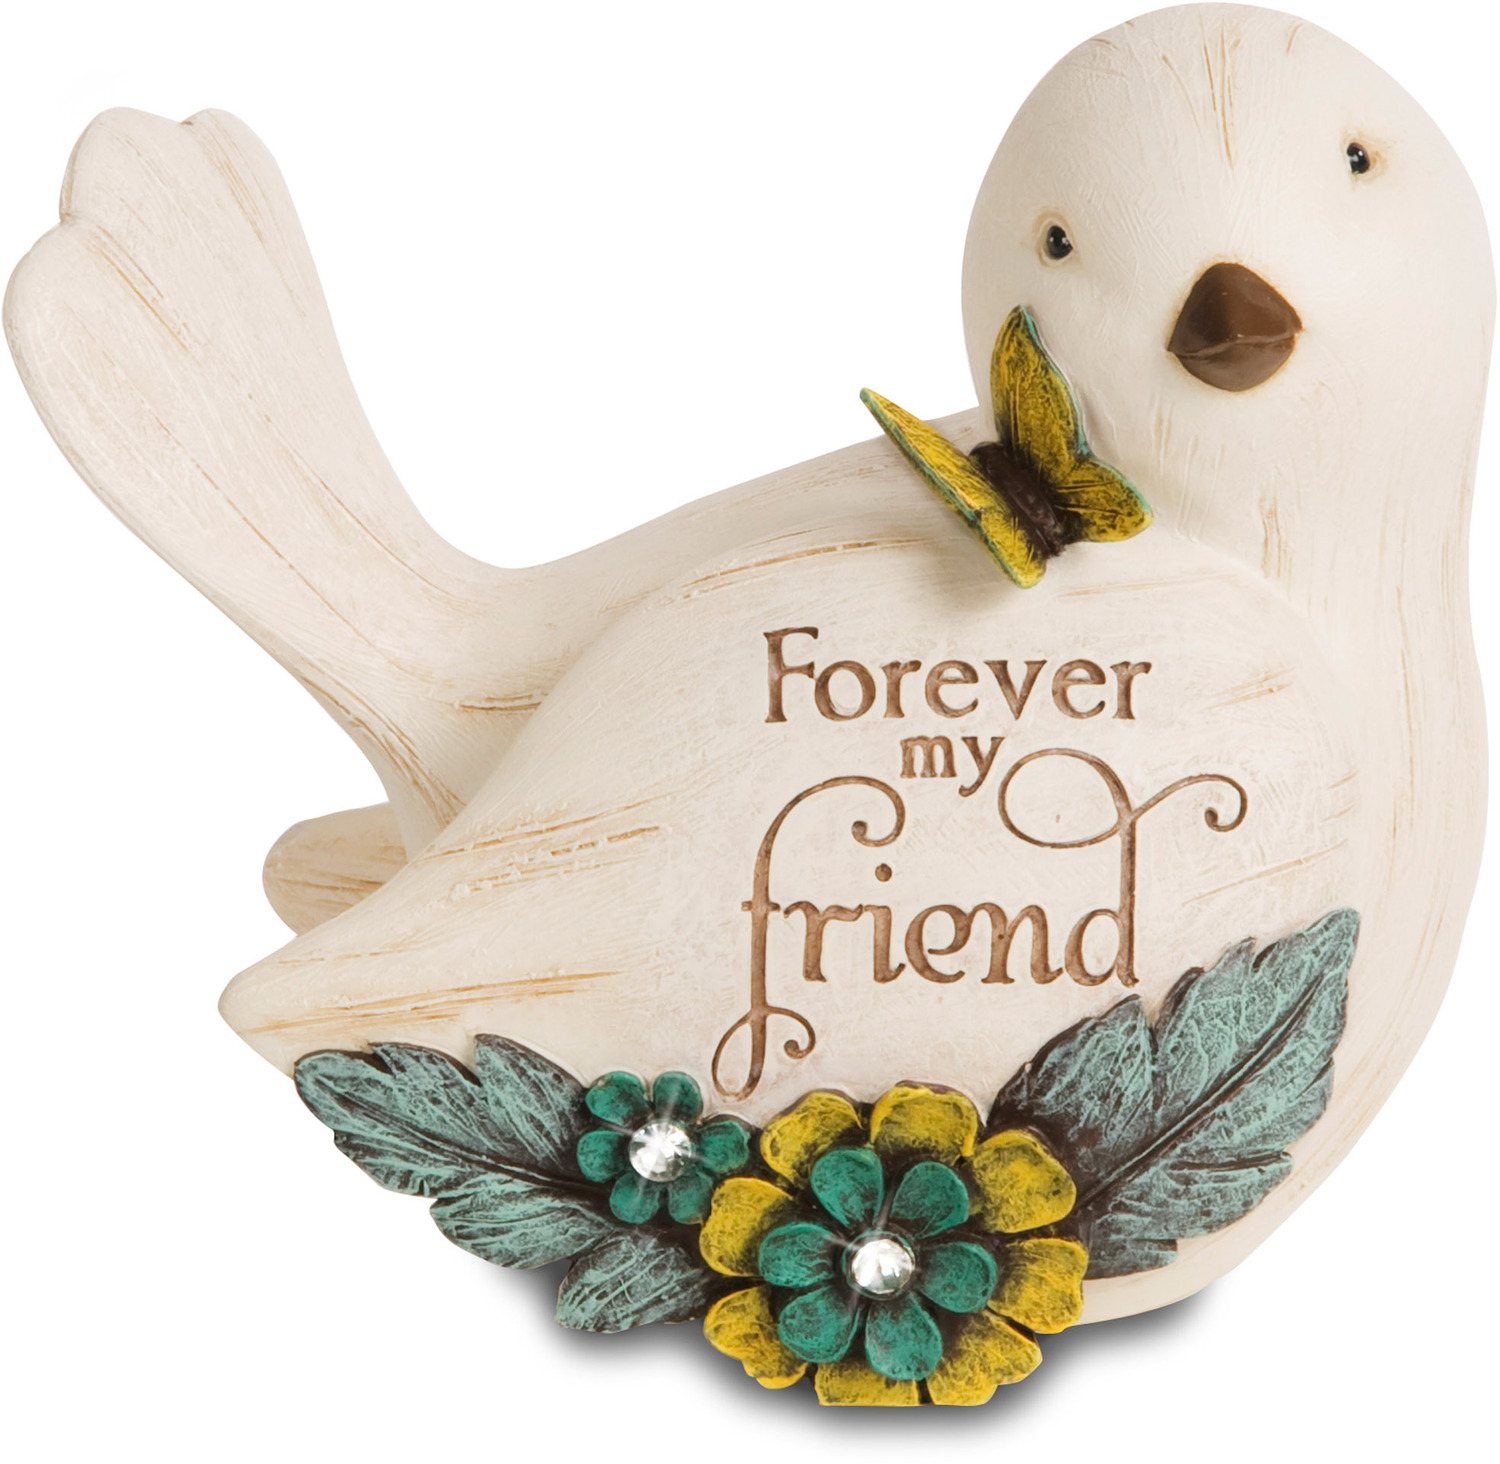 Friend by Simple Spirits - Friend - 3.5" Bird Figurine
